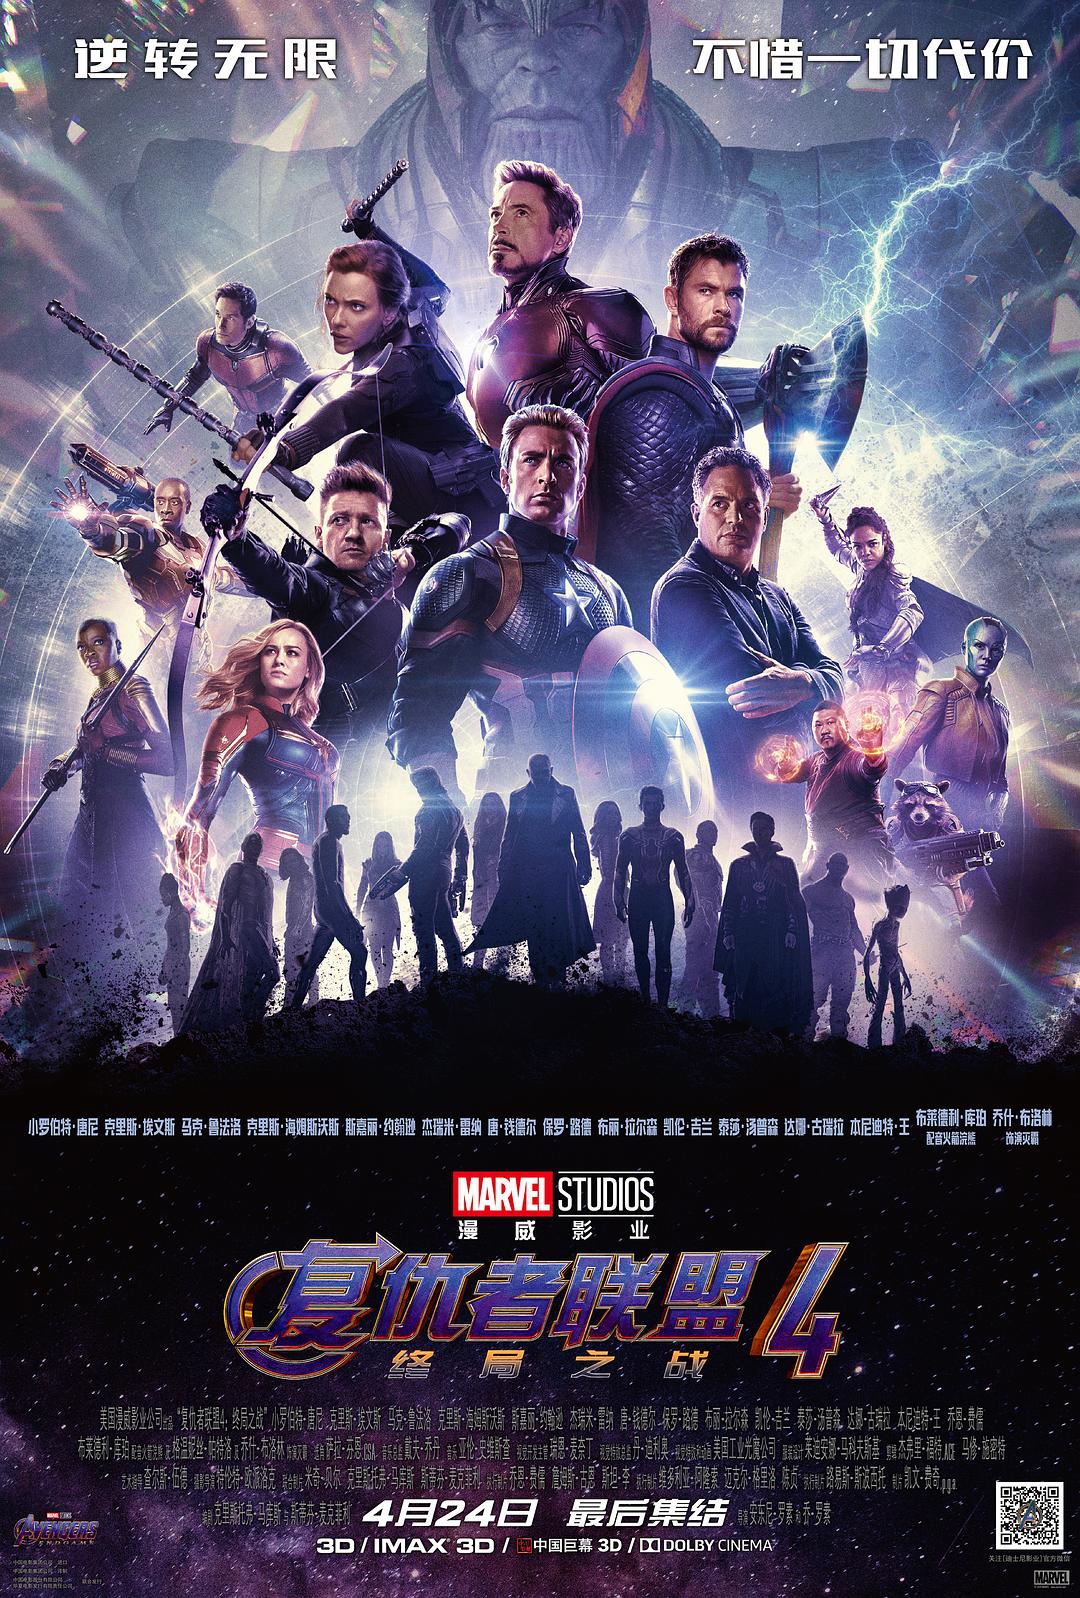 复仇者同盟4:终局之战 Avengers.Endgame.2019.1080p.3D.BluRay.AVC.DTS-HD.MA.7.1-SharpHD 45.83GB-1.png